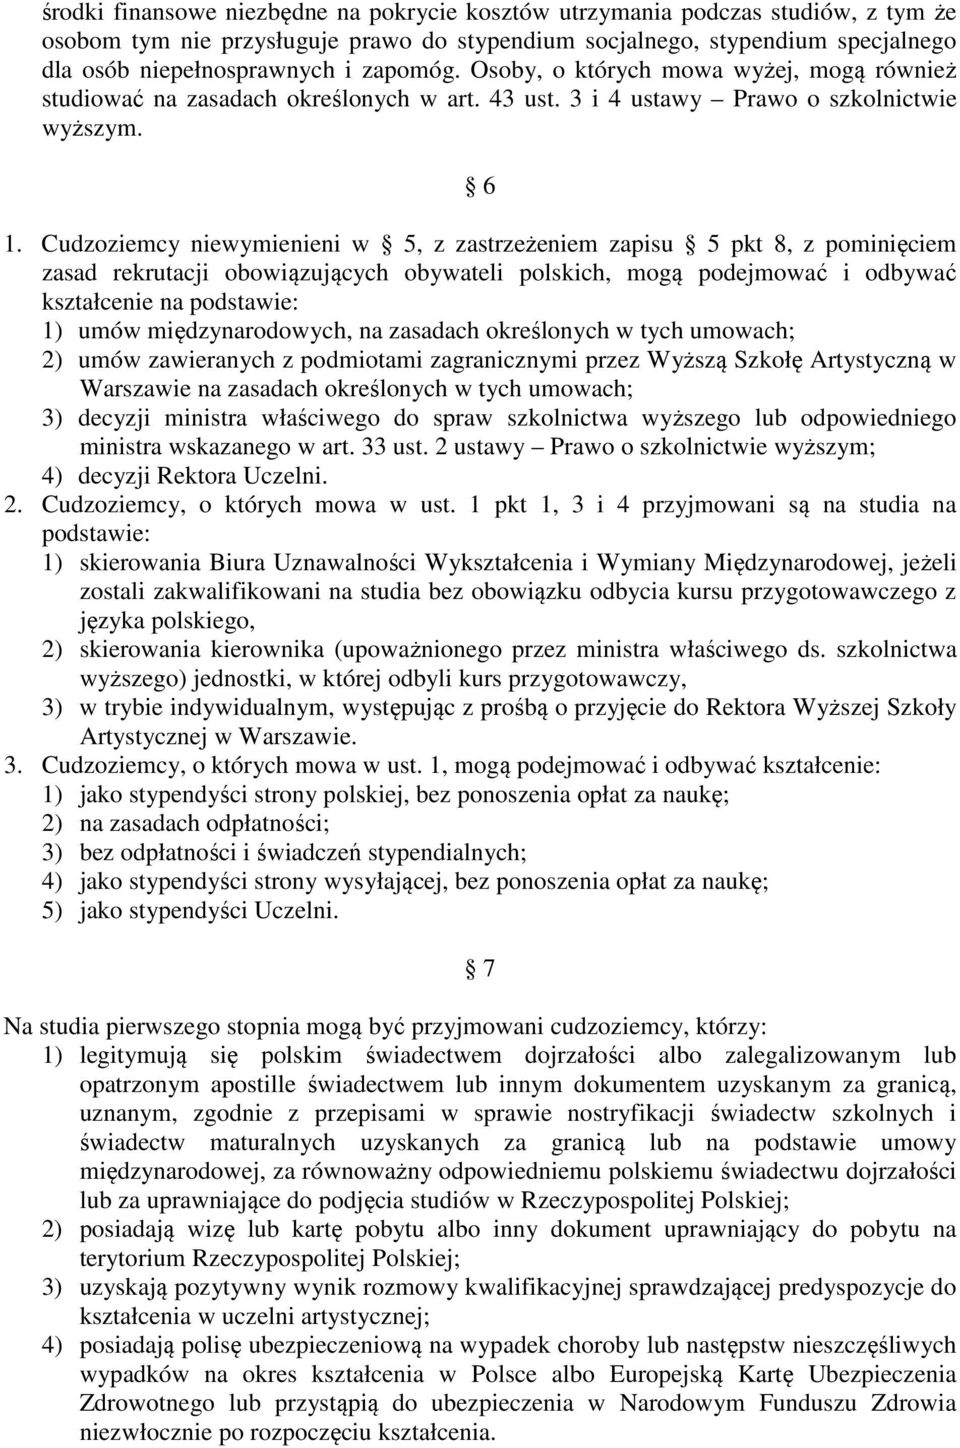 Cudzoziemcy niewymienieni w 5, z zastrzeżeniem zapisu 5 pkt 8, z pominięciem zasad rekrutacji obowiązujących obywateli polskich, mogą podejmować i odbywać kształcenie na podstawie: 1) umów